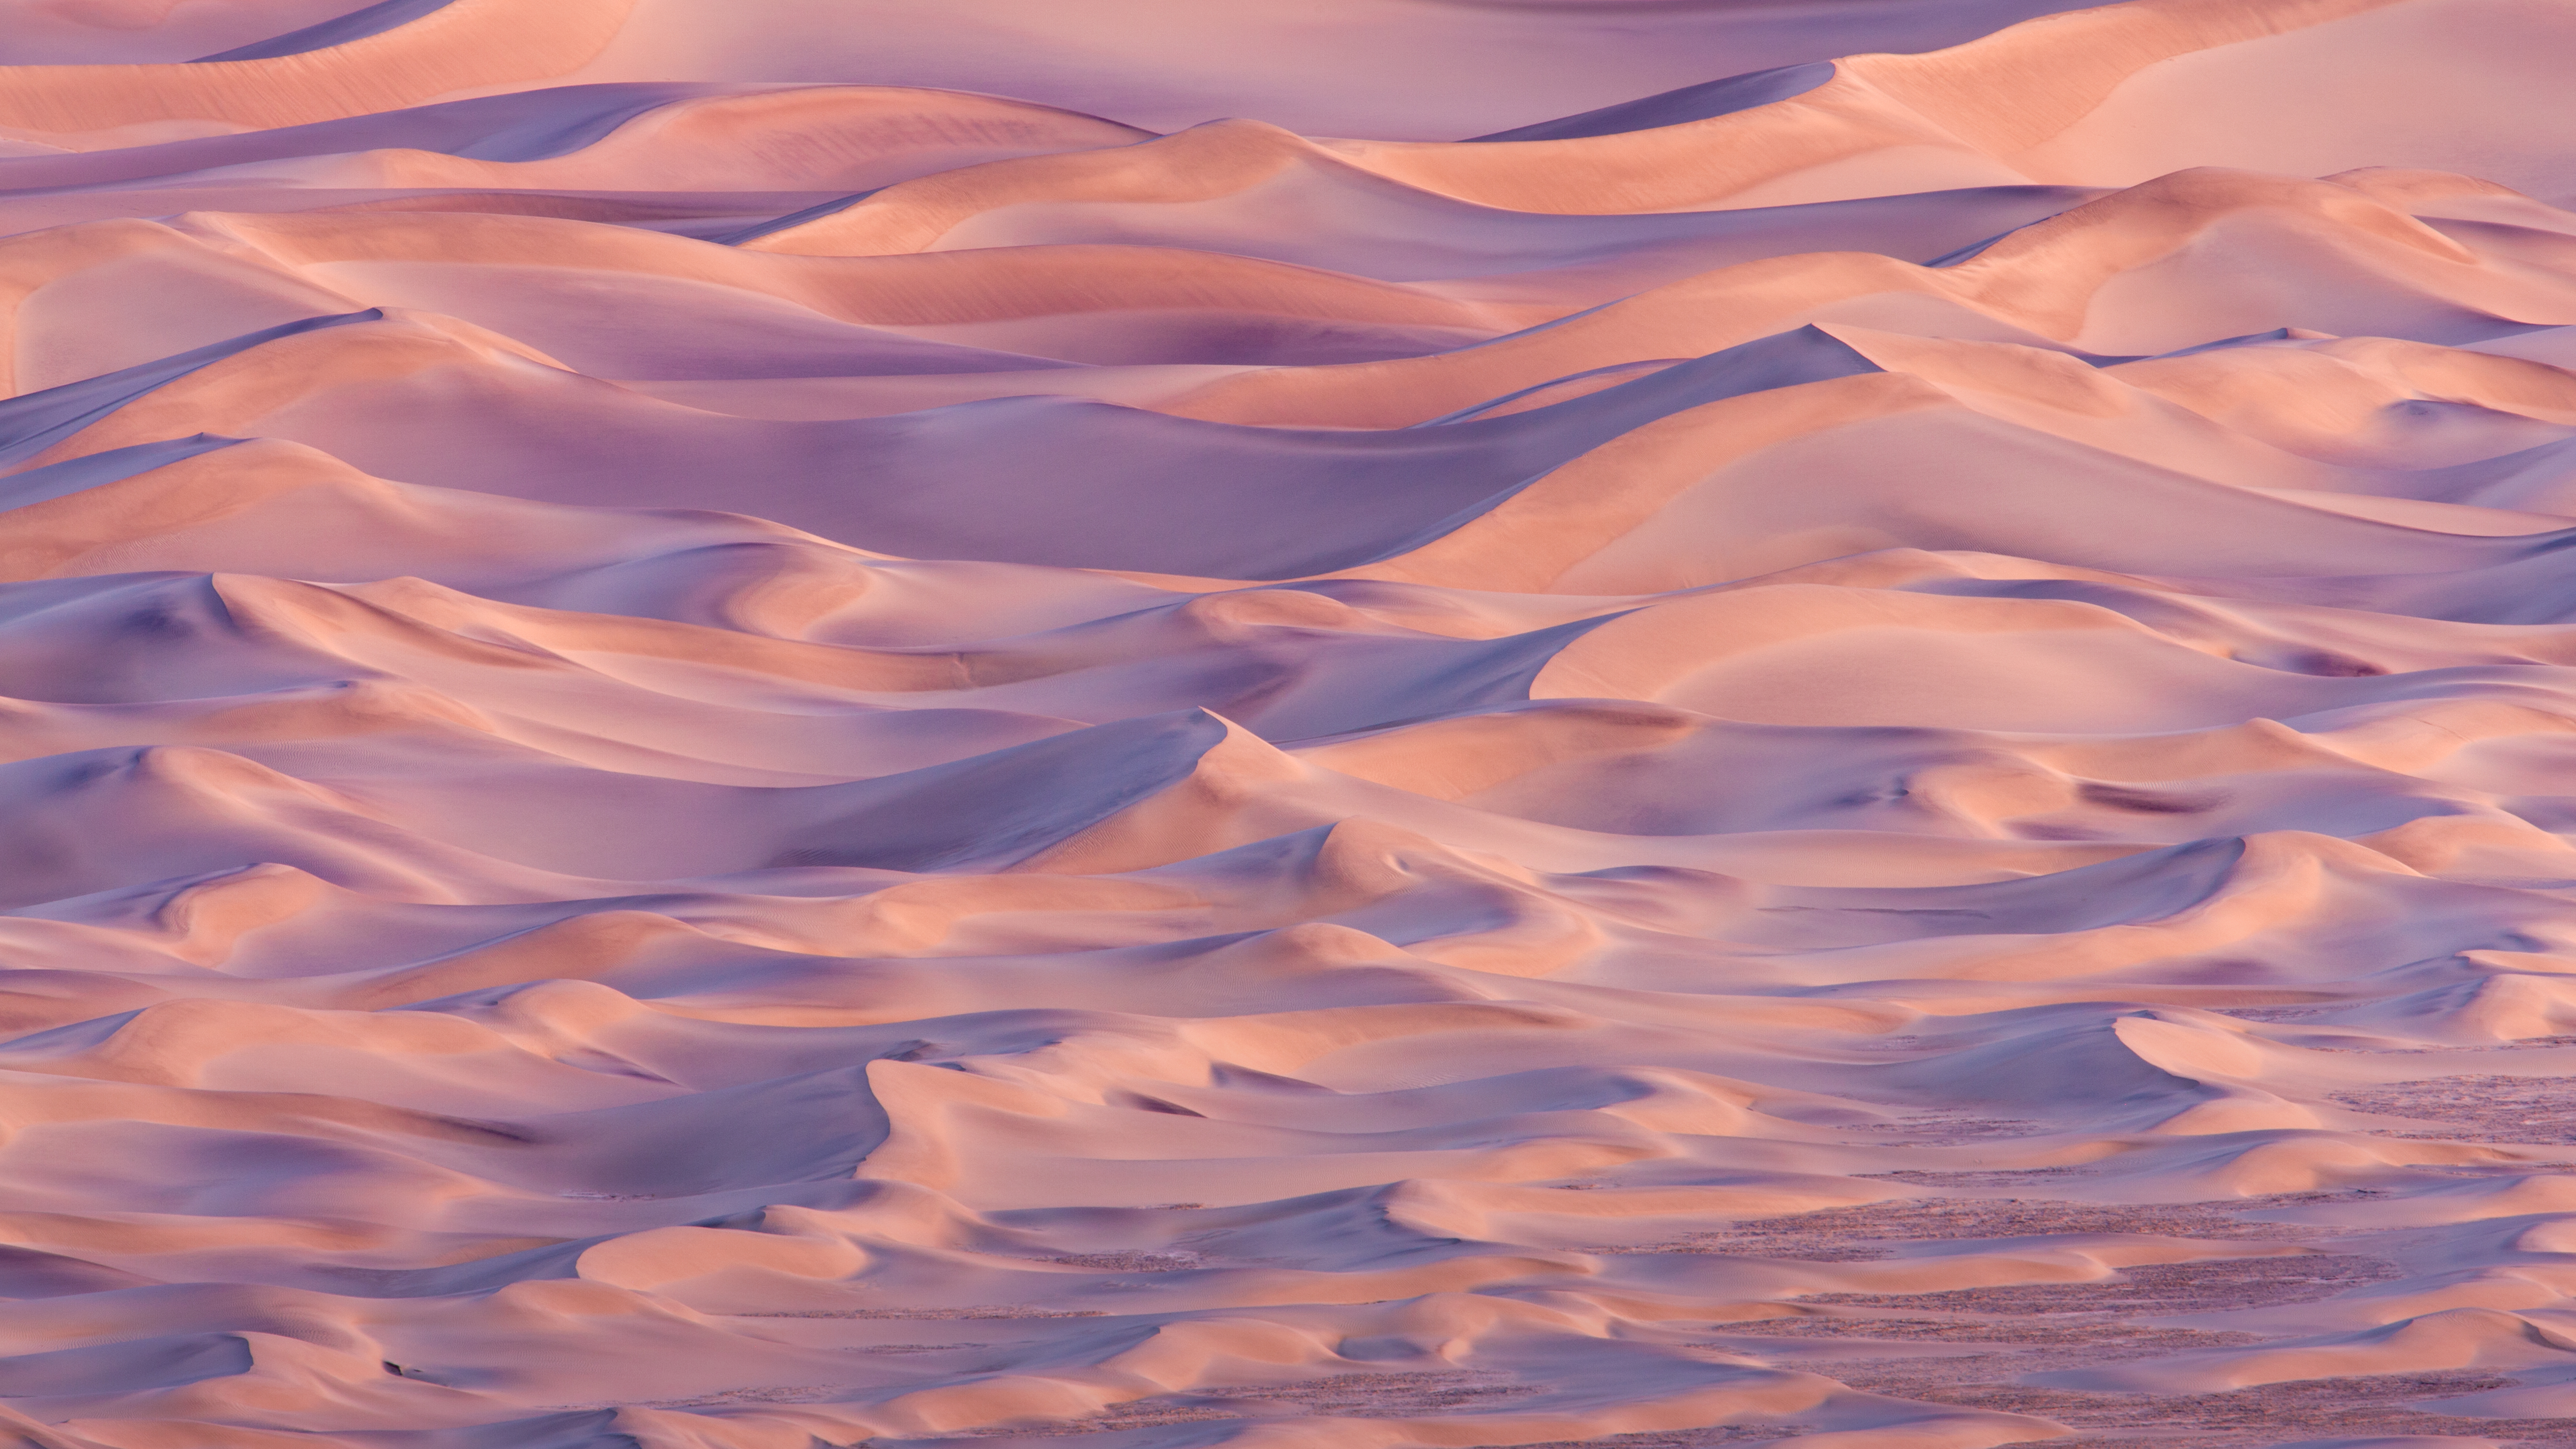 os x mavericks fondo de pantalla,cielo,desierto,nube,arena,duna